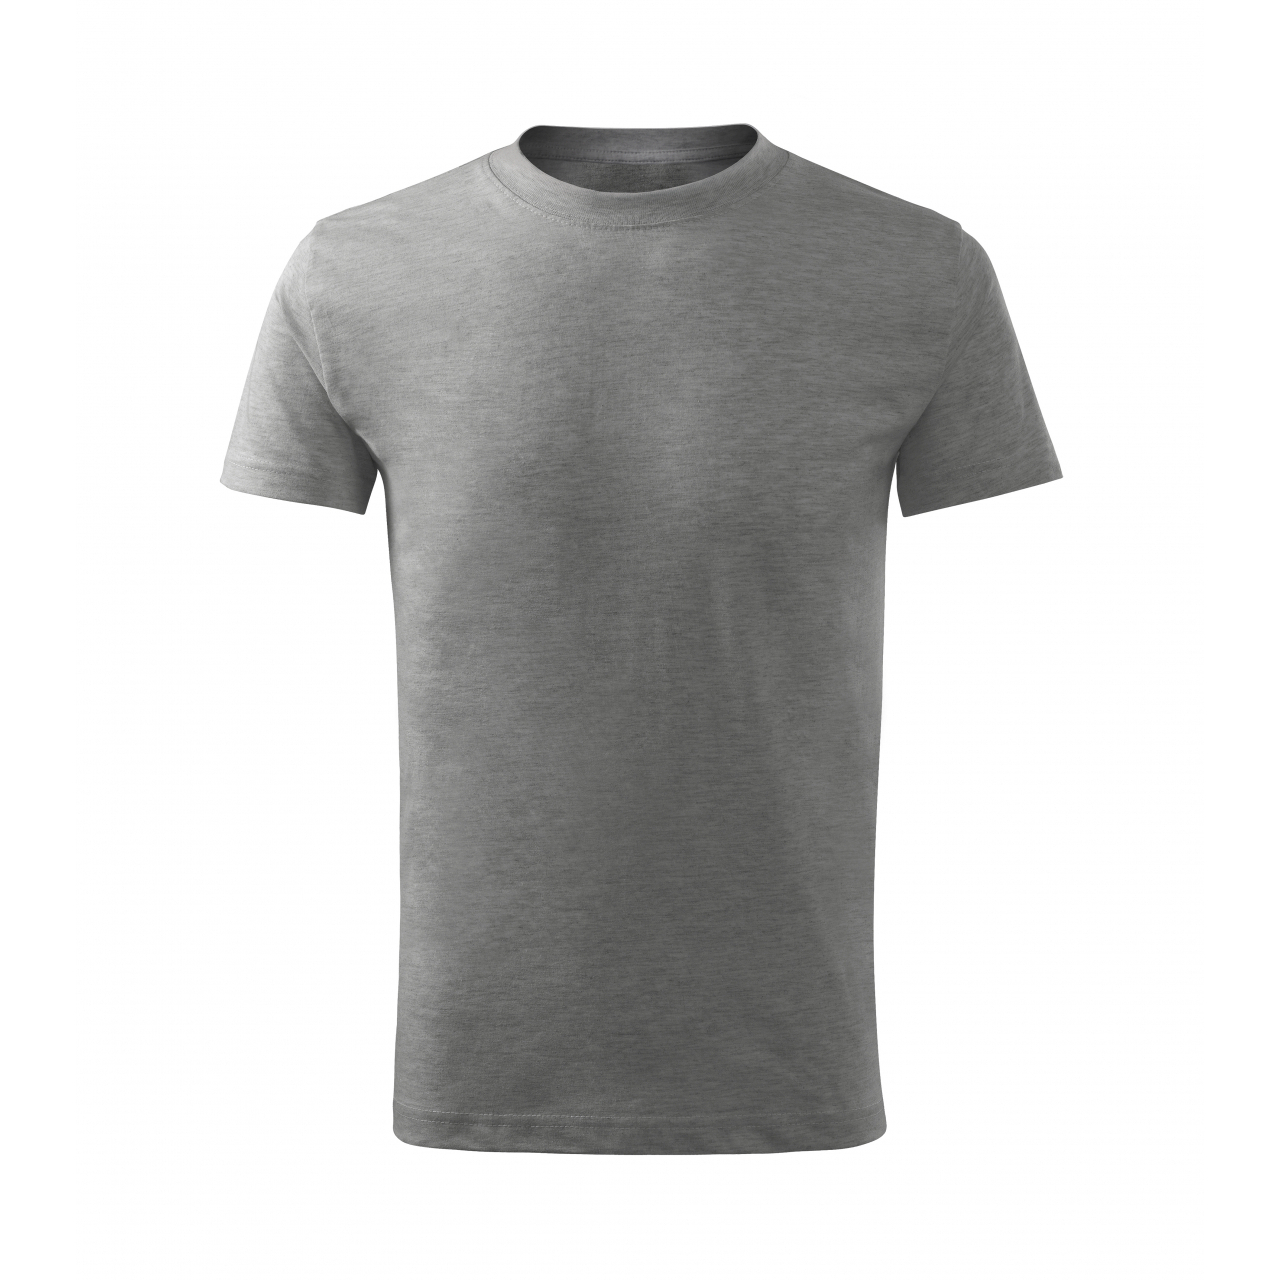 Tričko dětské Malfini Basic Free - šedé, 110